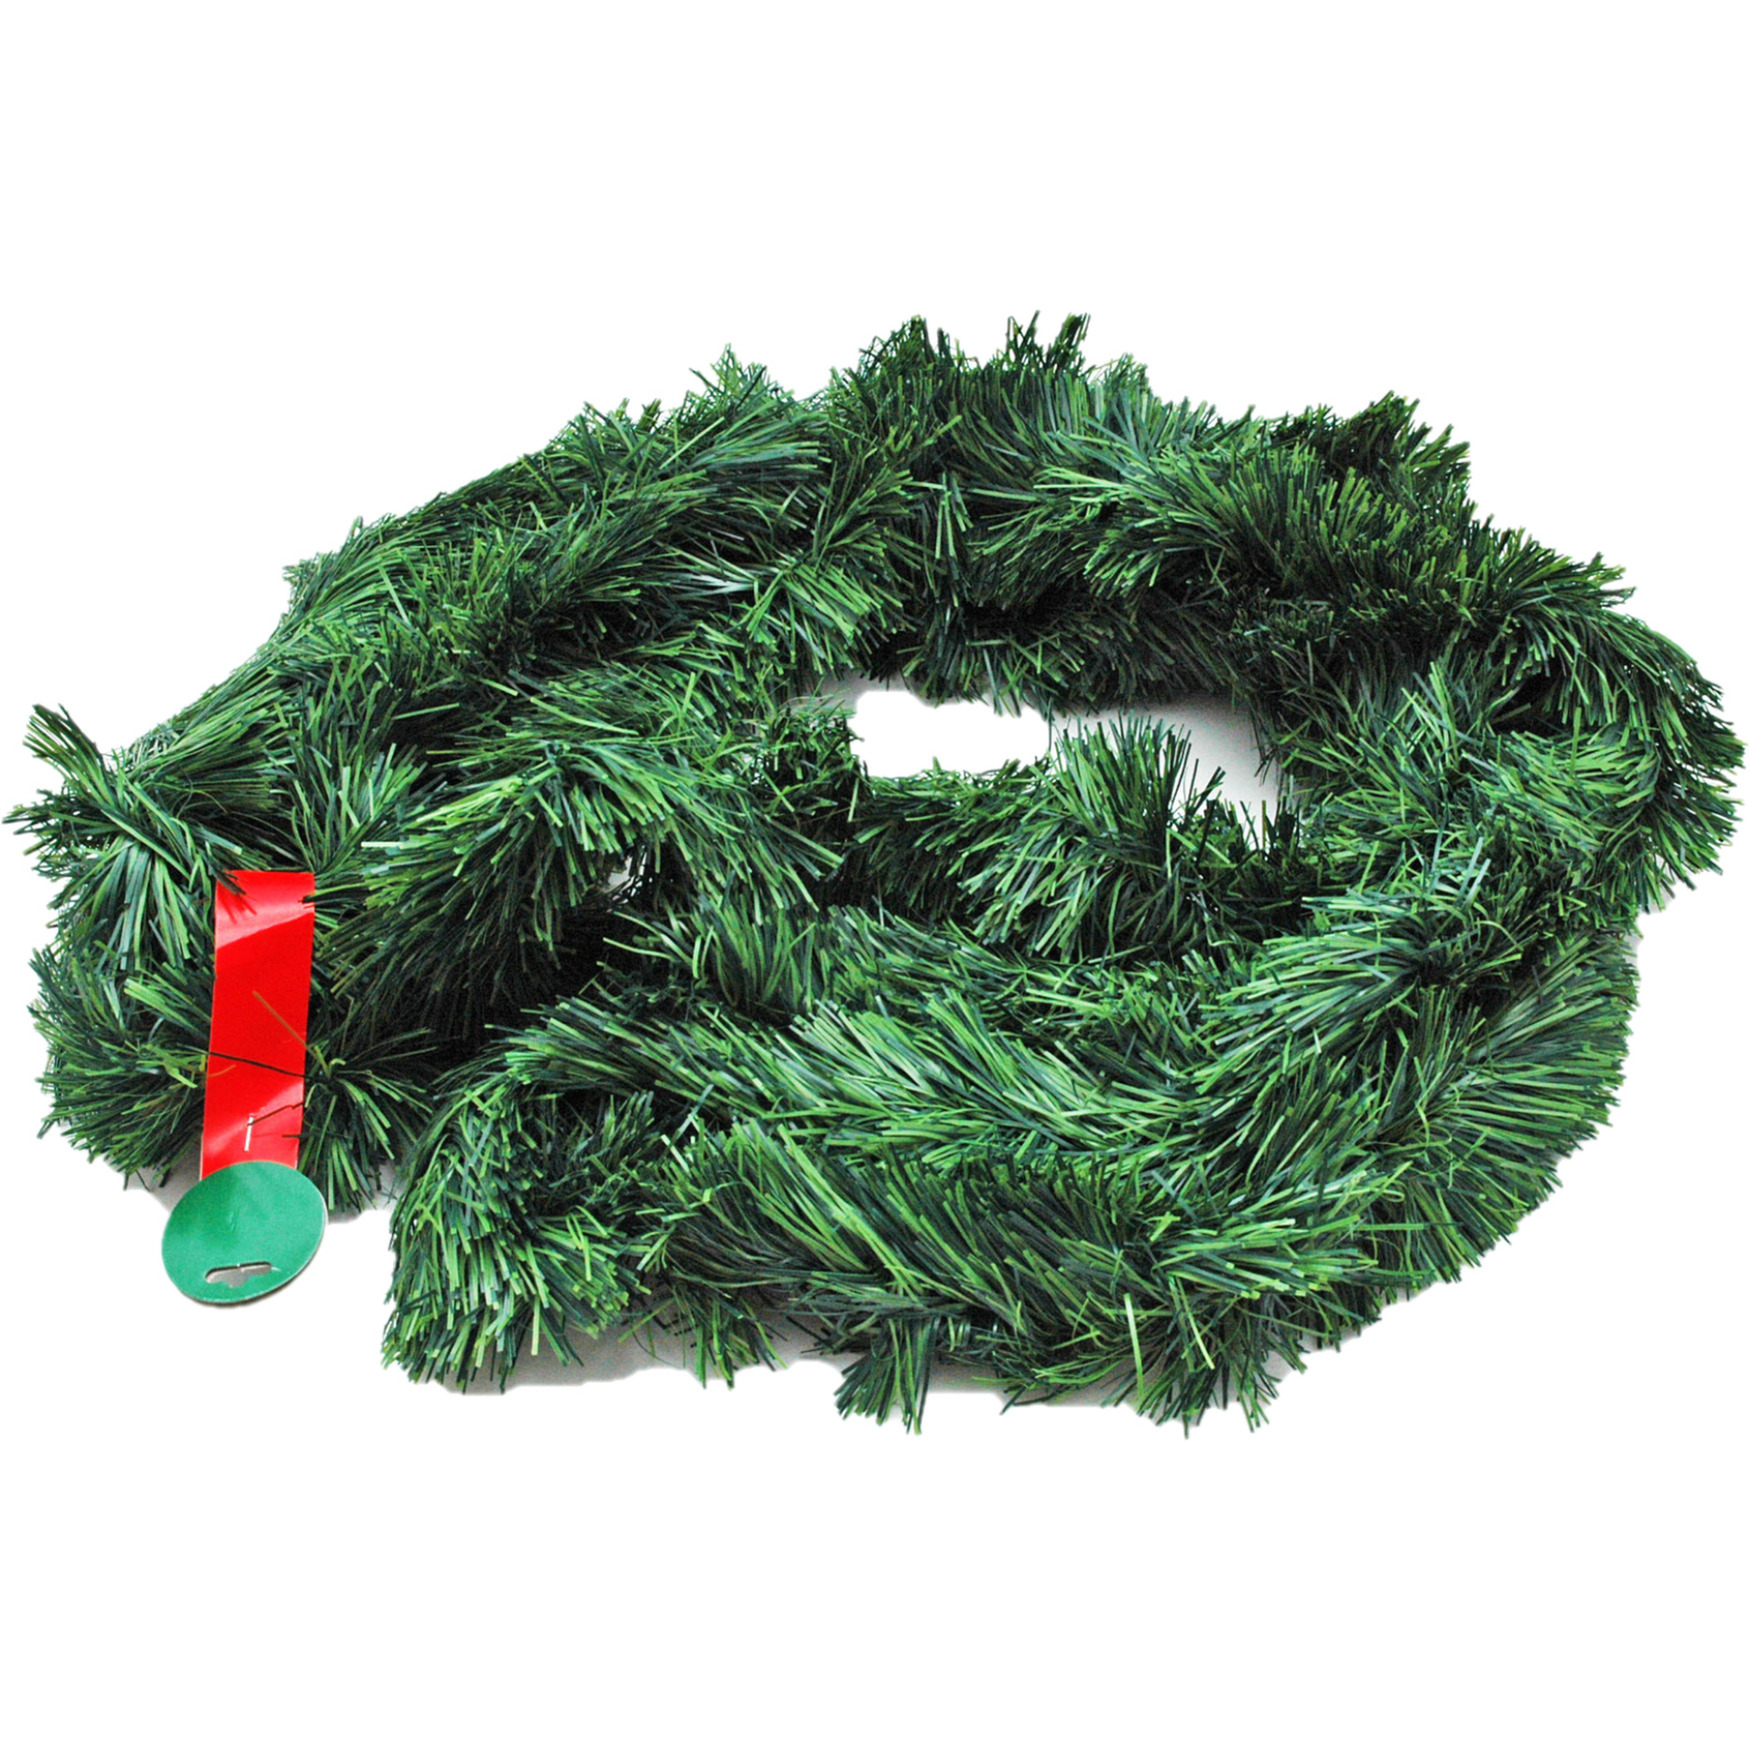 Kerstslinger dennen guirlande groen L10 mtr x B10 cm kunststof